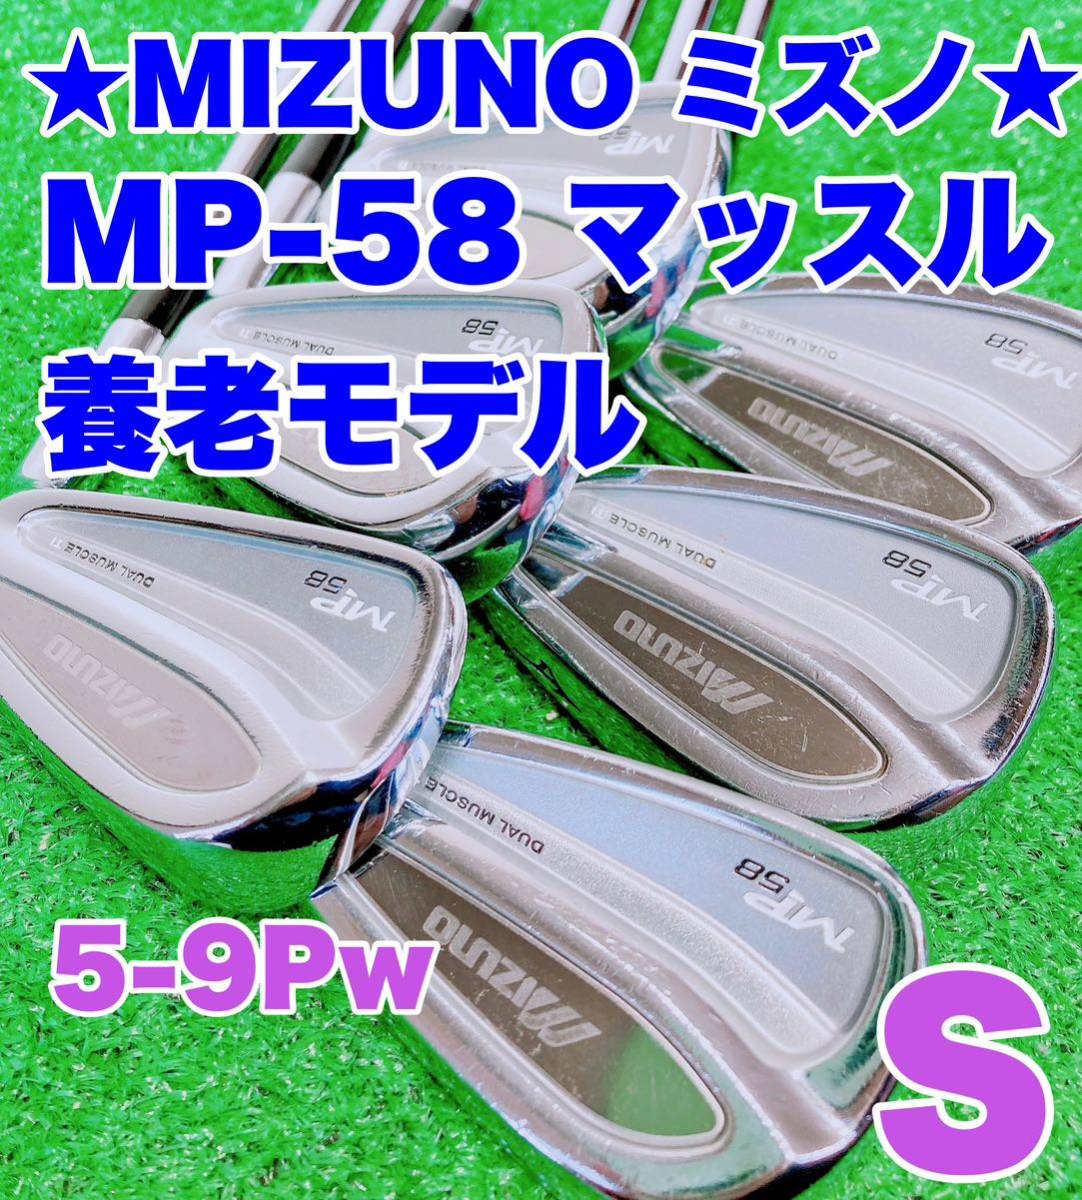 16859.7円グッチ 子供 激安大特価 激レア養老工場製造☆ミズノ MP-5